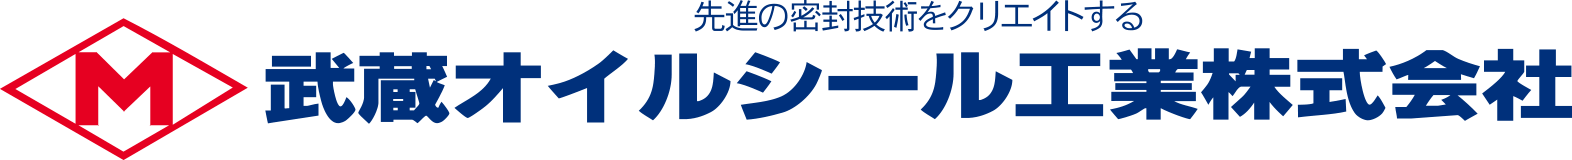 シールワッシャー - 武蔵オイルシール工業株式会社